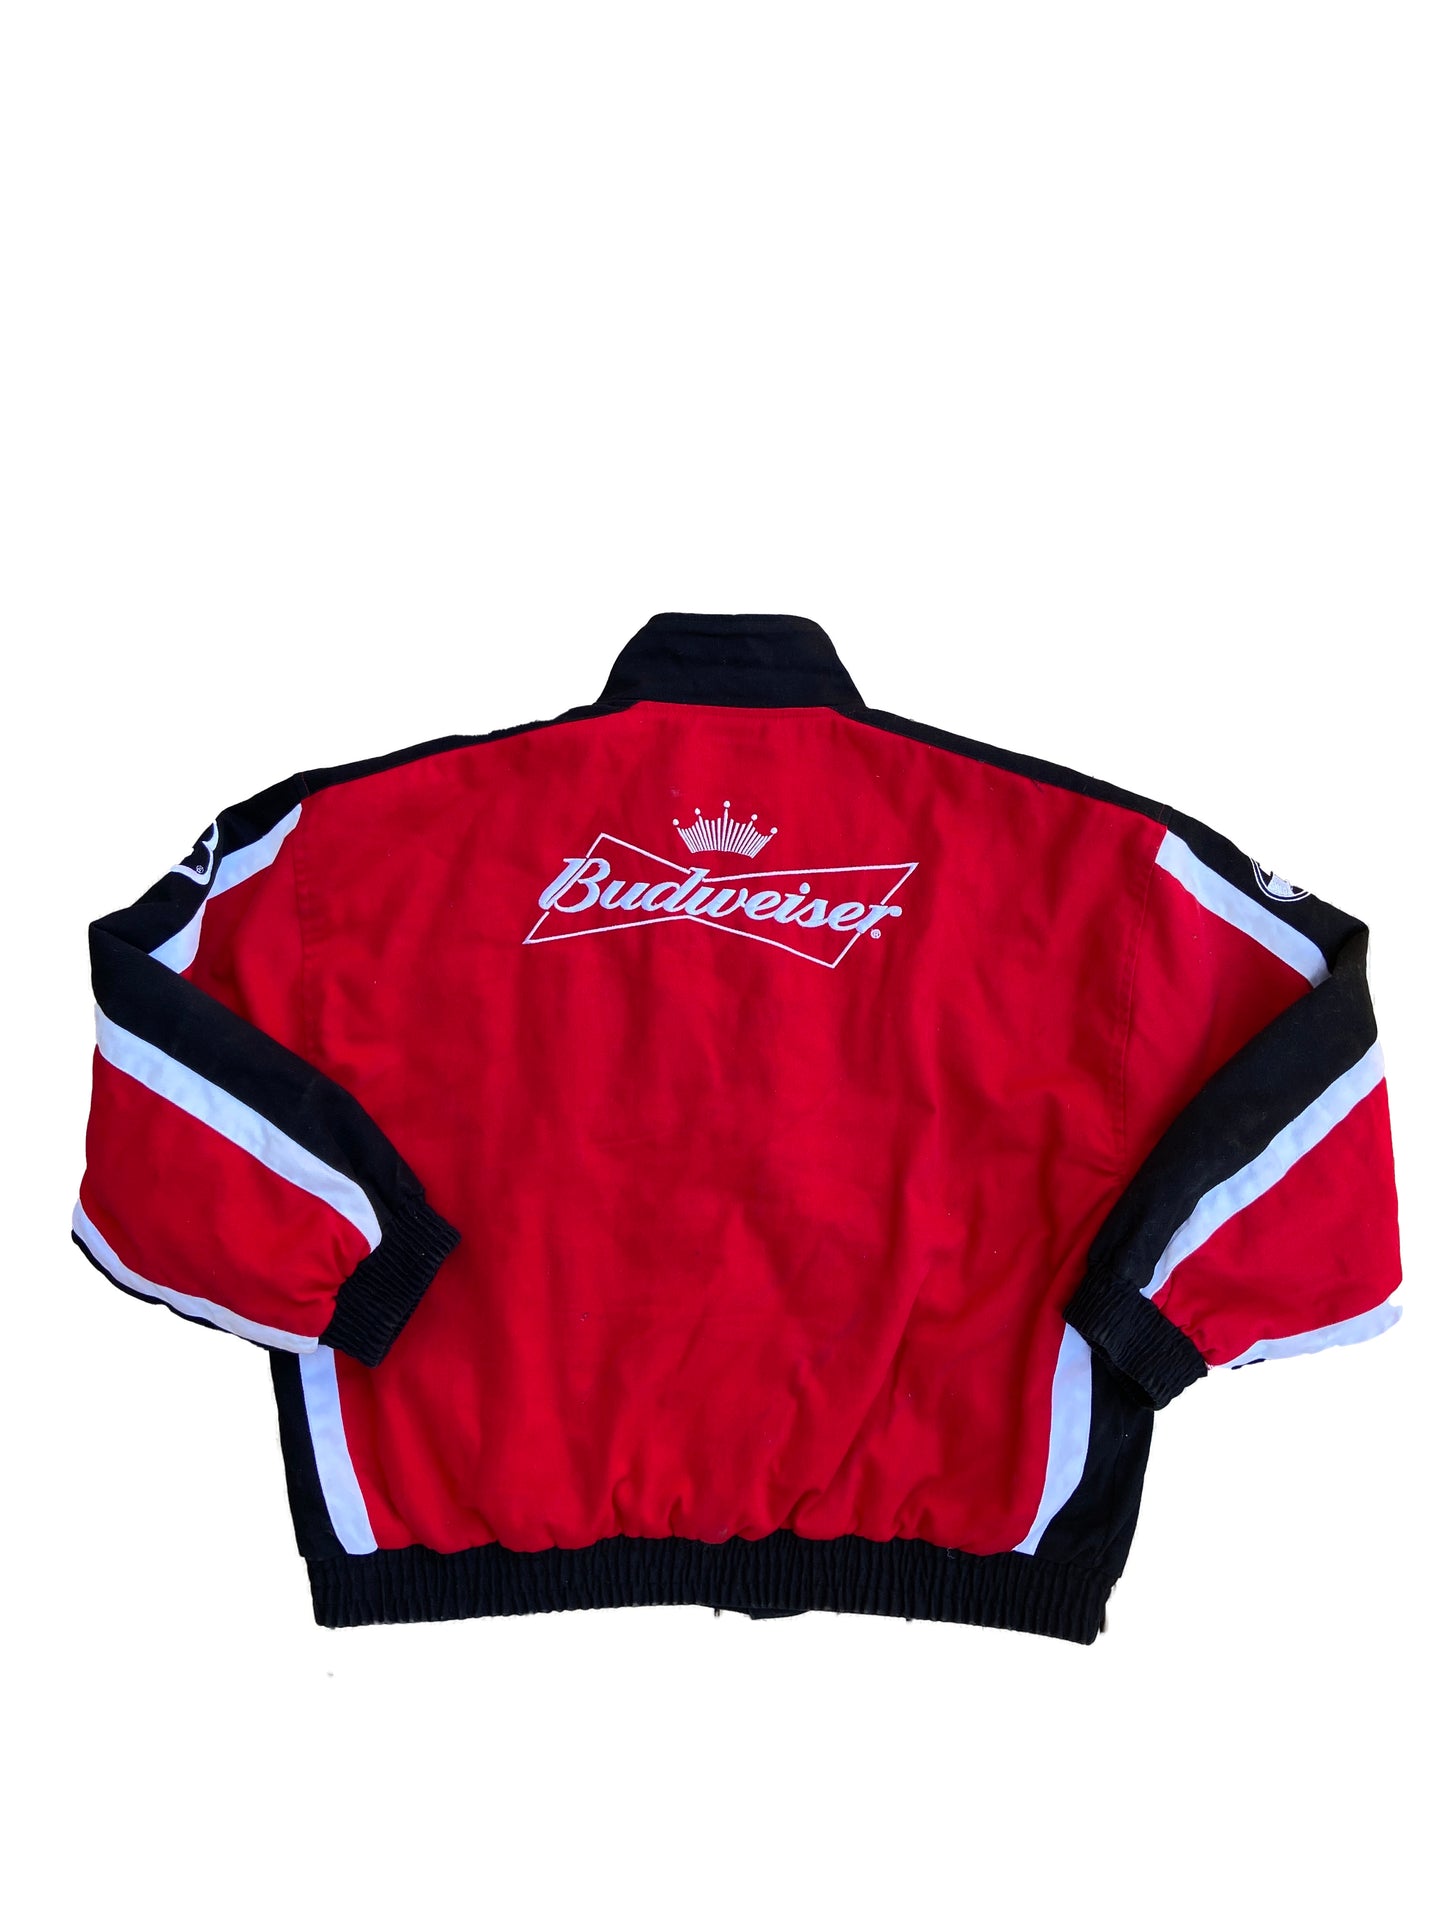 Vintage Nascar Dale Earnhardt Jr. Budweiser Race Jacket Red